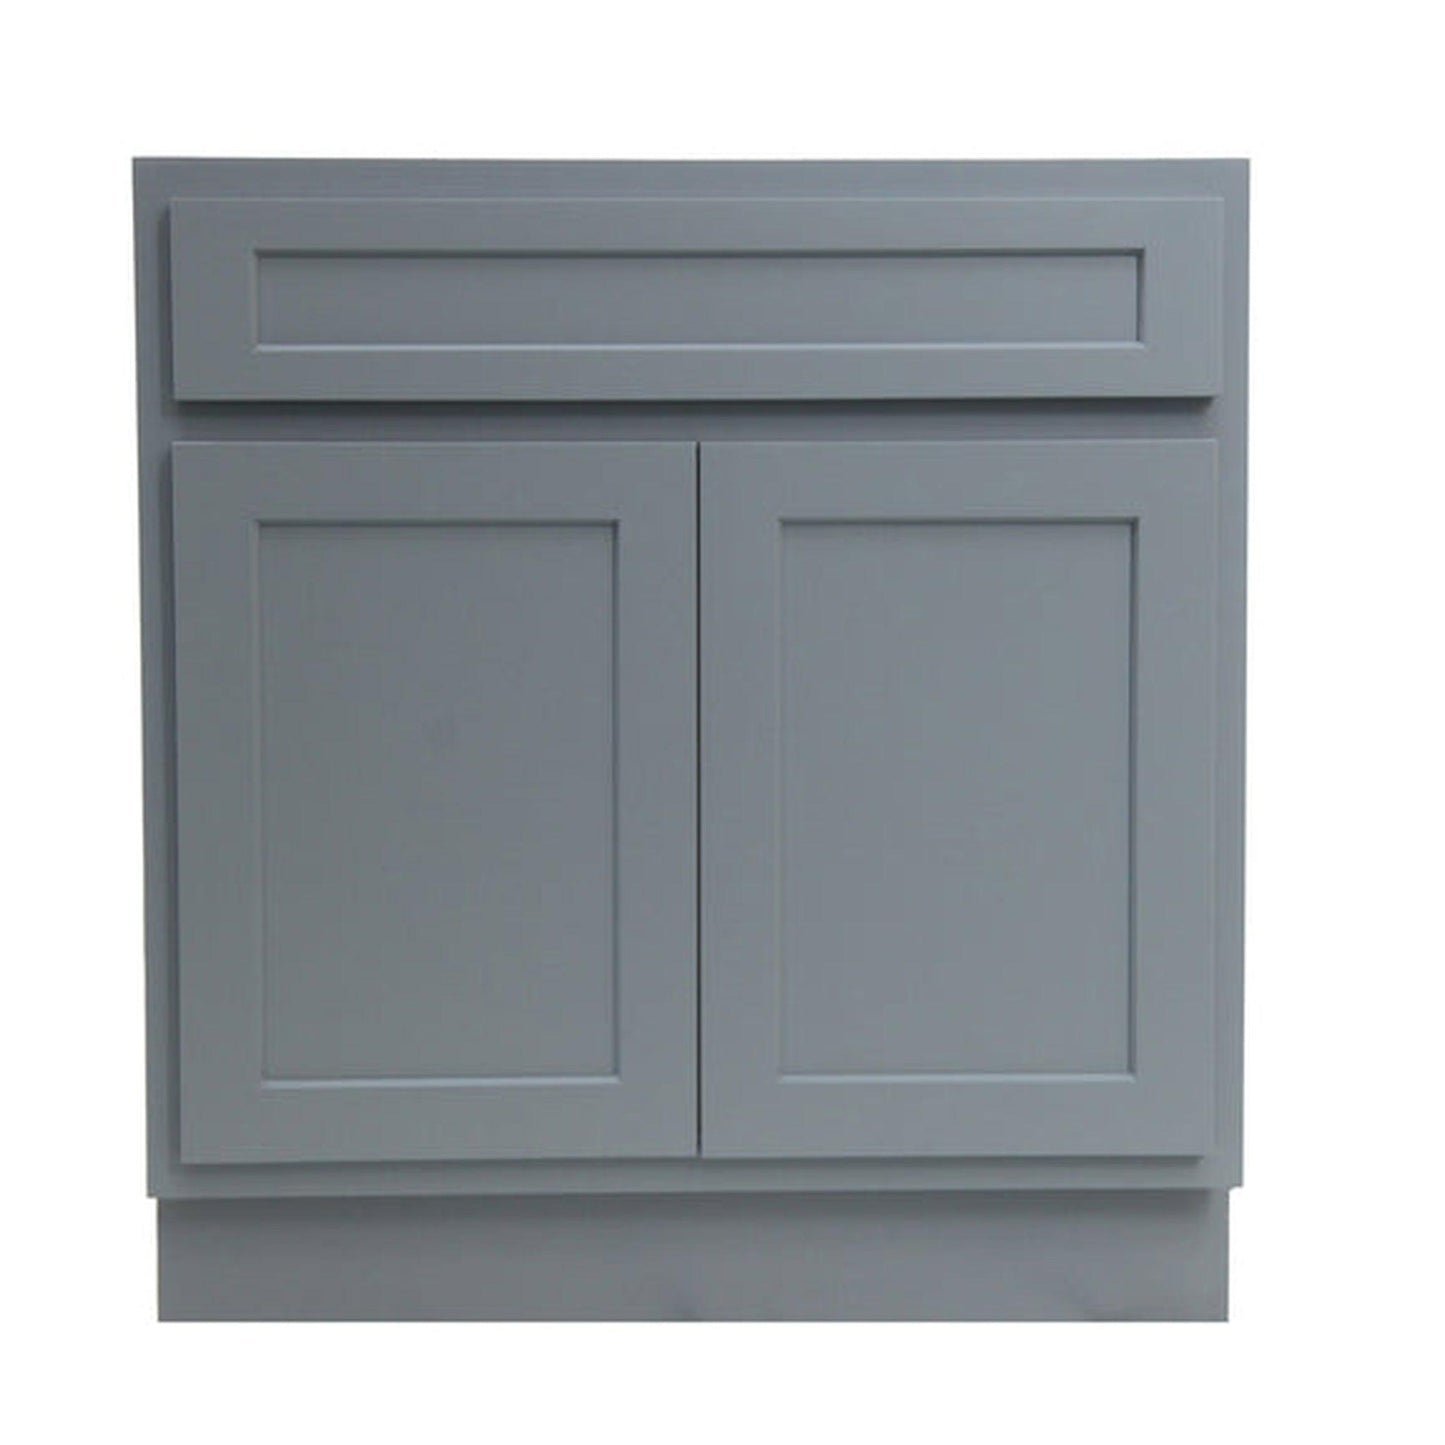 Vanity Art 24" Gray Freestanding Solid Wood Vanity Cabinet With Double Soft Closing Doors